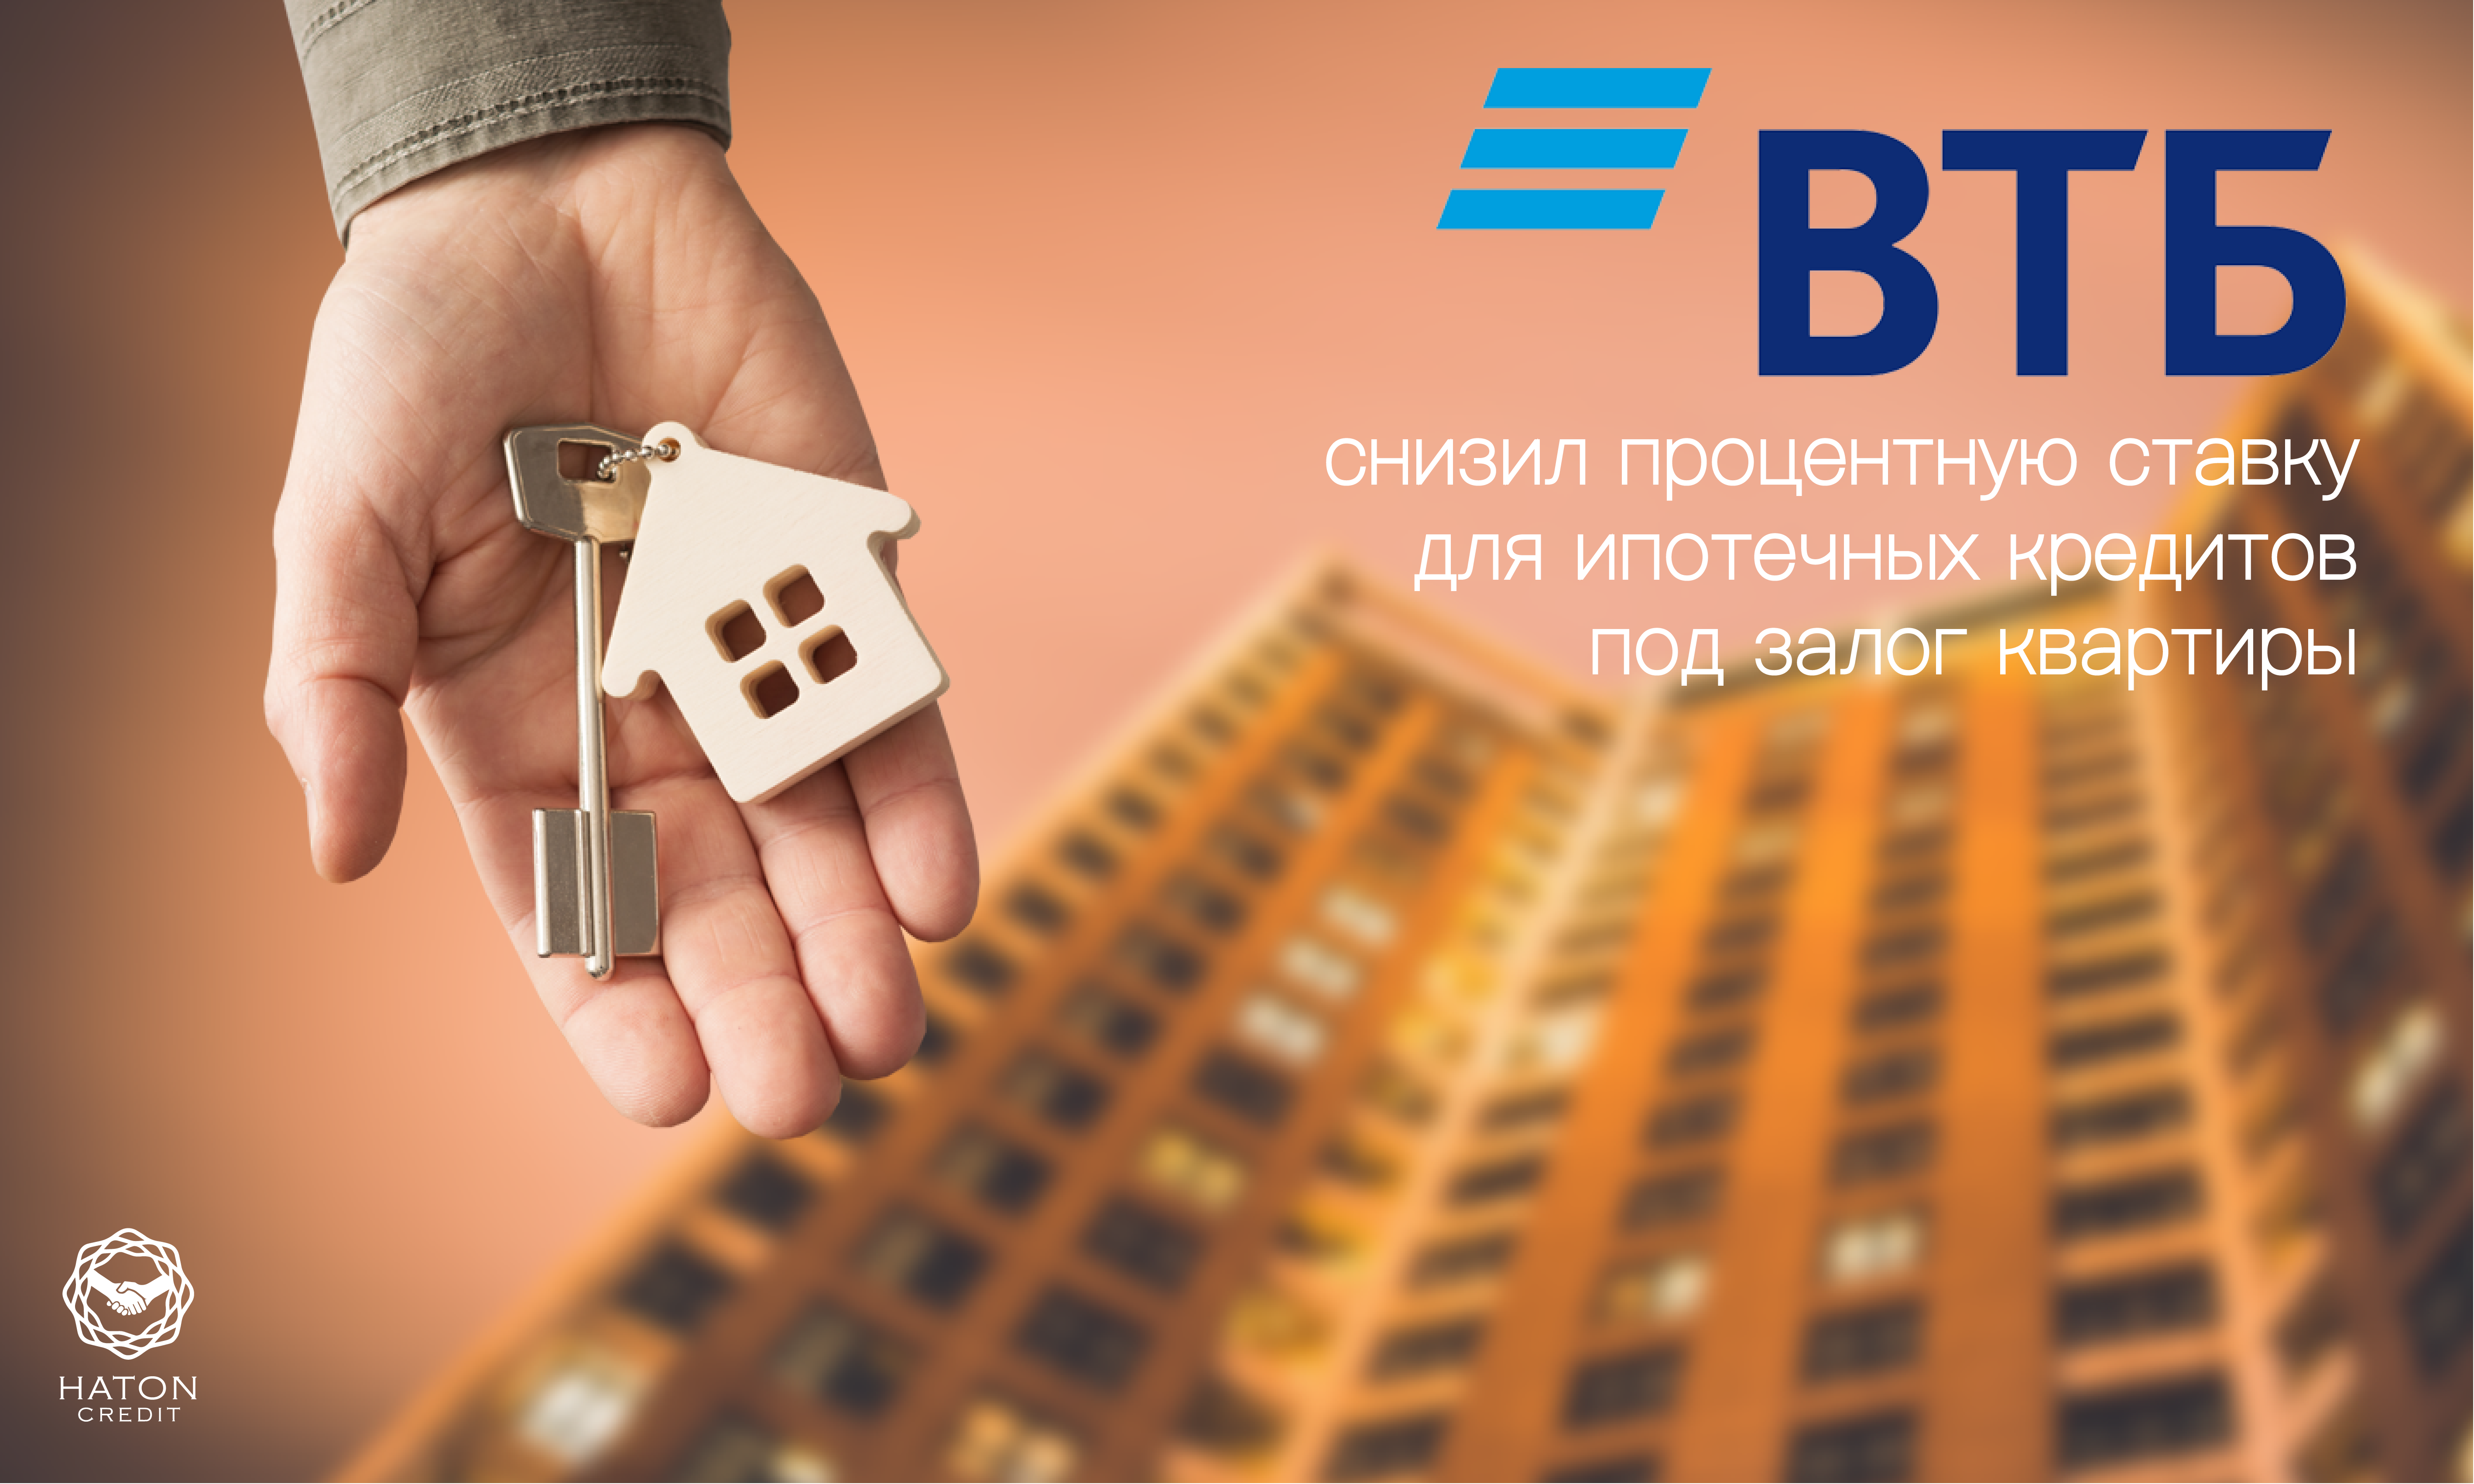 ВТБ снизил процентную ставку для ипотечных кредитов под залог квартиры.